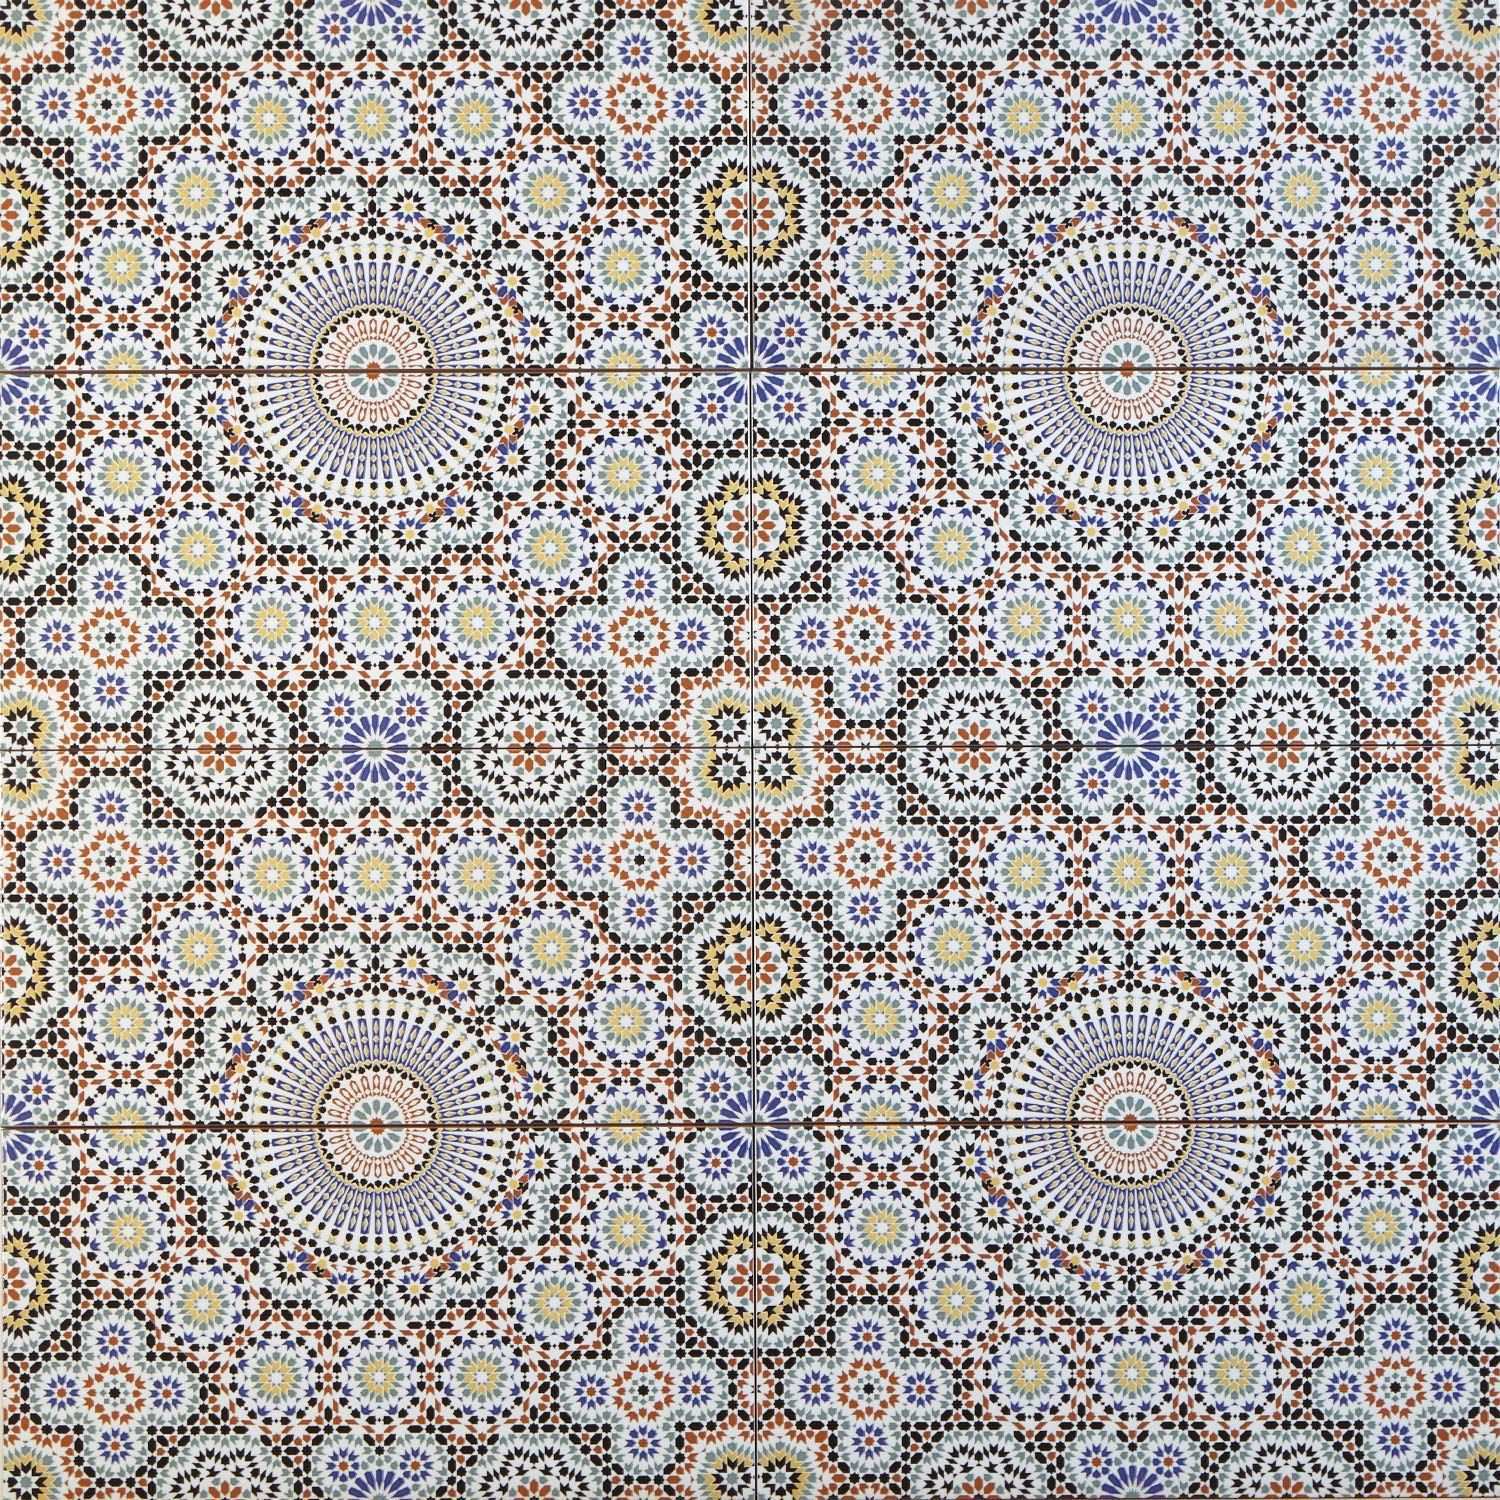 Orientalische Mosaik Fliese Marokkanische Wandfliese Riad 50 X 25 Cm Motivfliese Maurische Keramikfliesen Ornam Marokkanische Fliesen Ornamentfliesen Fliesen